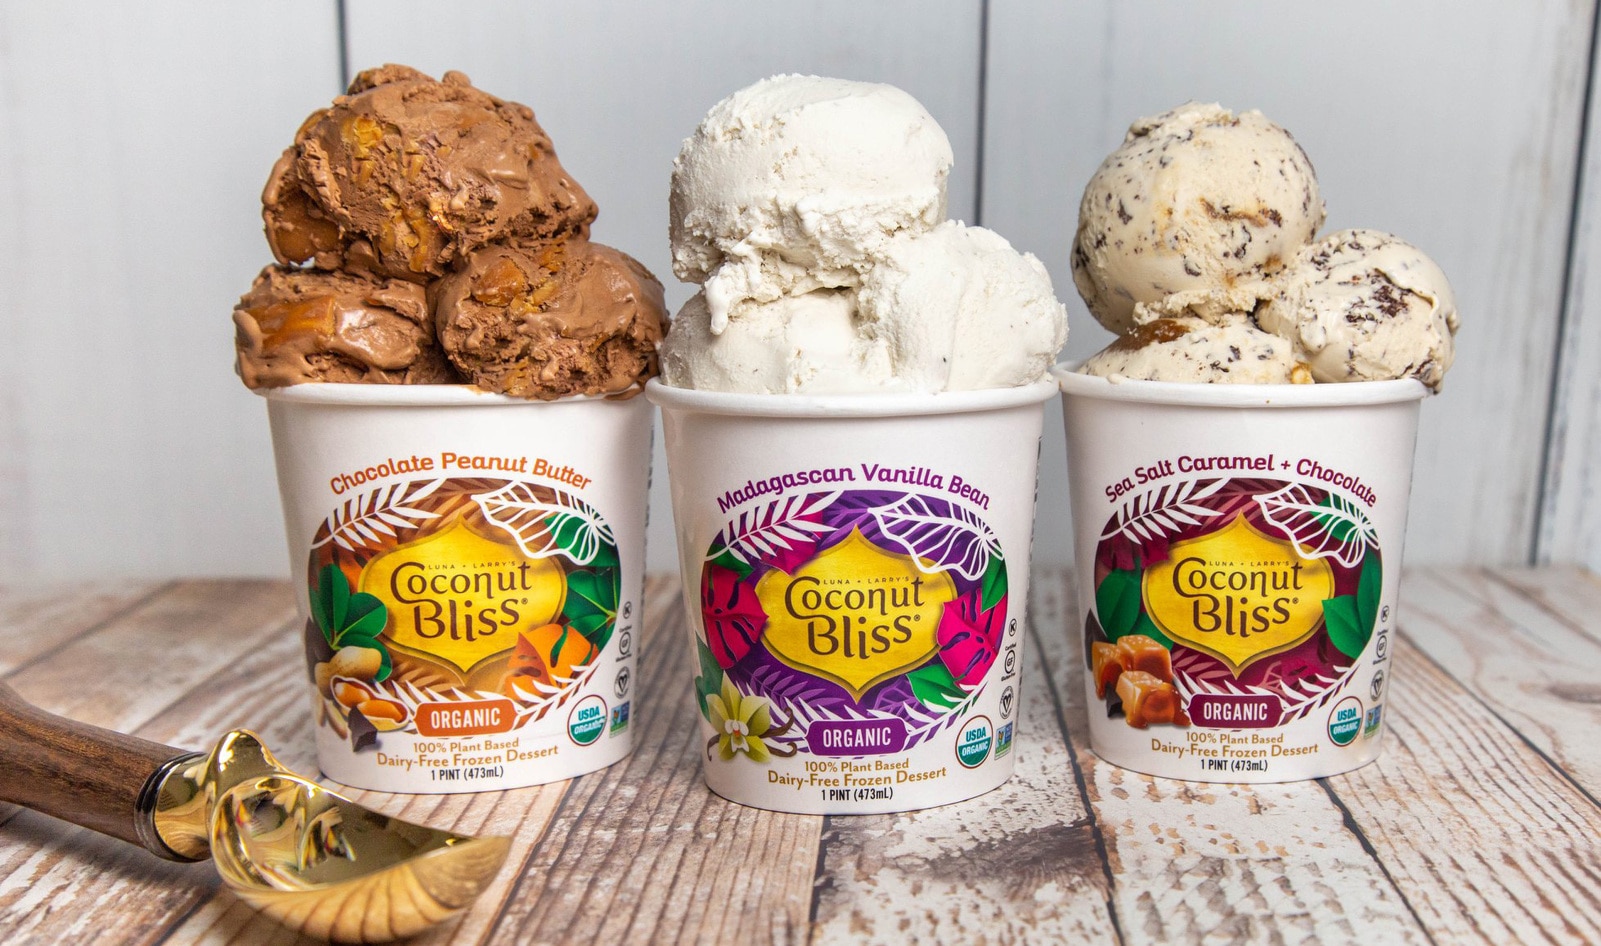 Vegan Ice Cream Brand Coconut Bliss Strikes Major Investment Deal